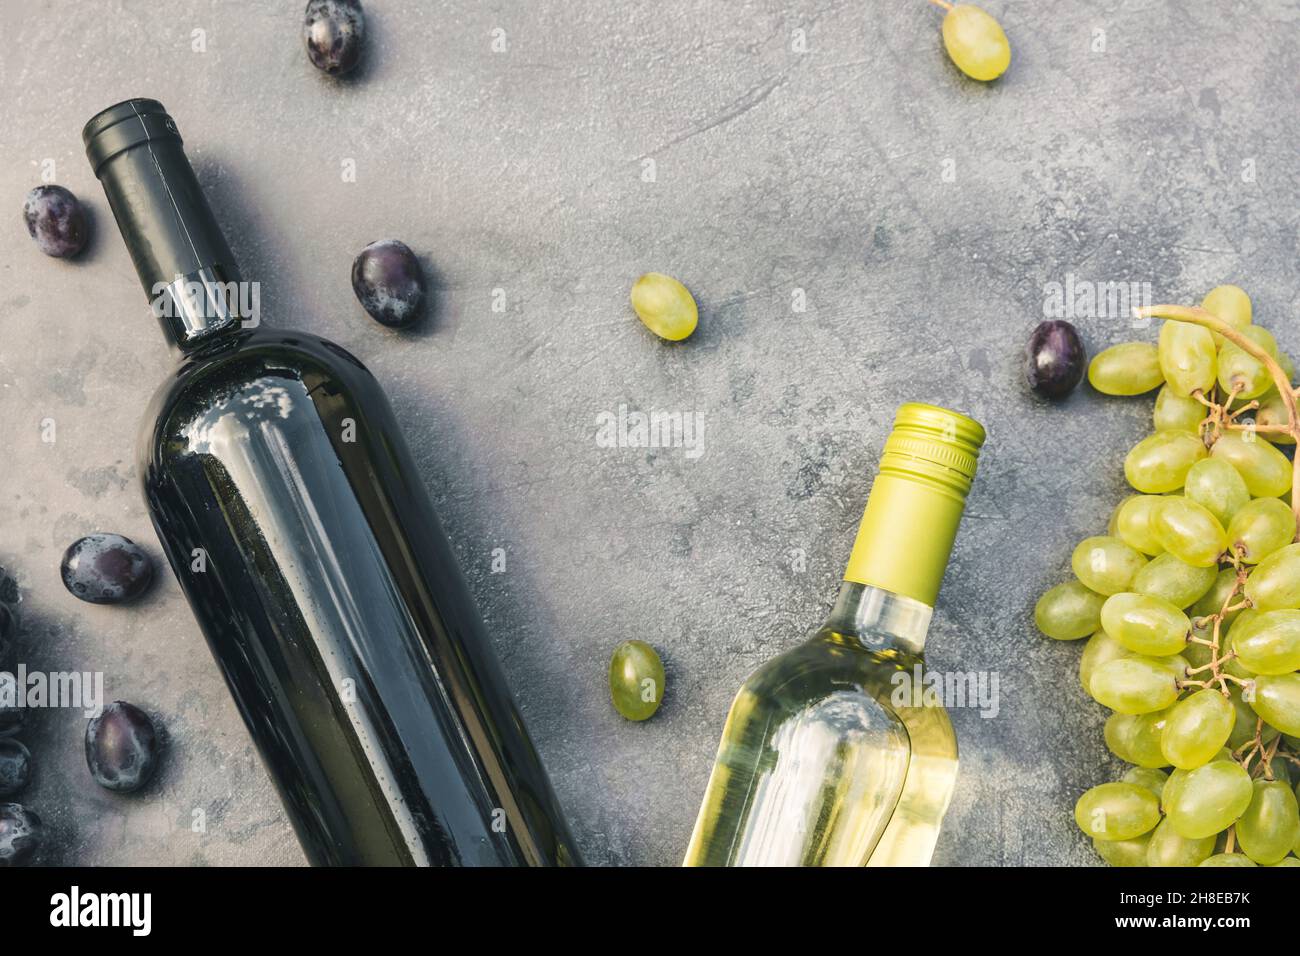 Draufsicht auf Flasche Rot- und Weißwein, grüne Rebe, Weinglas und reife Trauben auf vintage dunklen Stein Tisch Hintergrund. Weinladen Weinbar Weingut oder Weinprobe Konzept Stockfoto